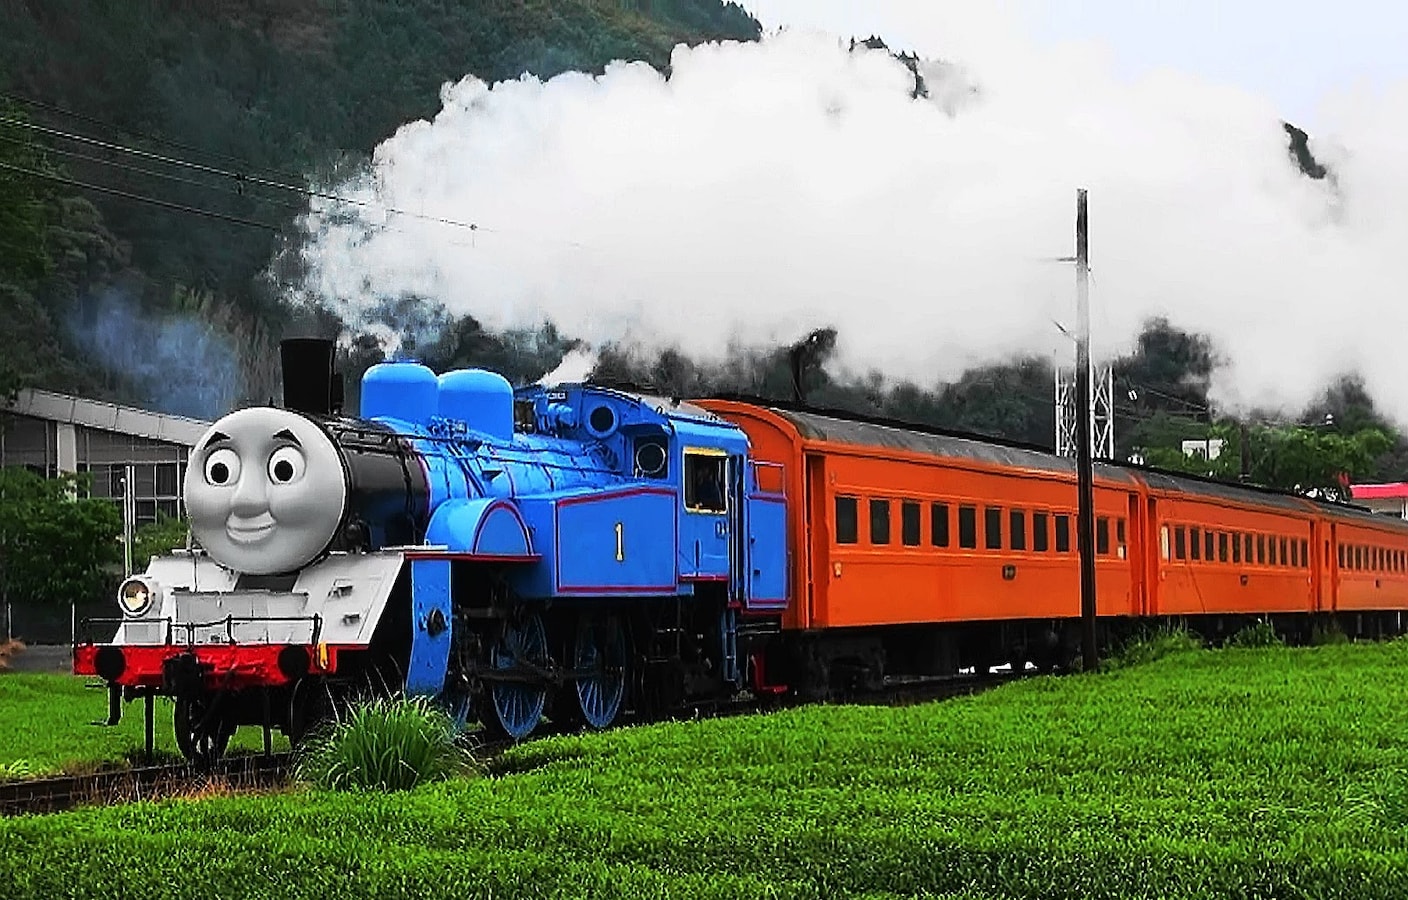 thomas the train locomotive